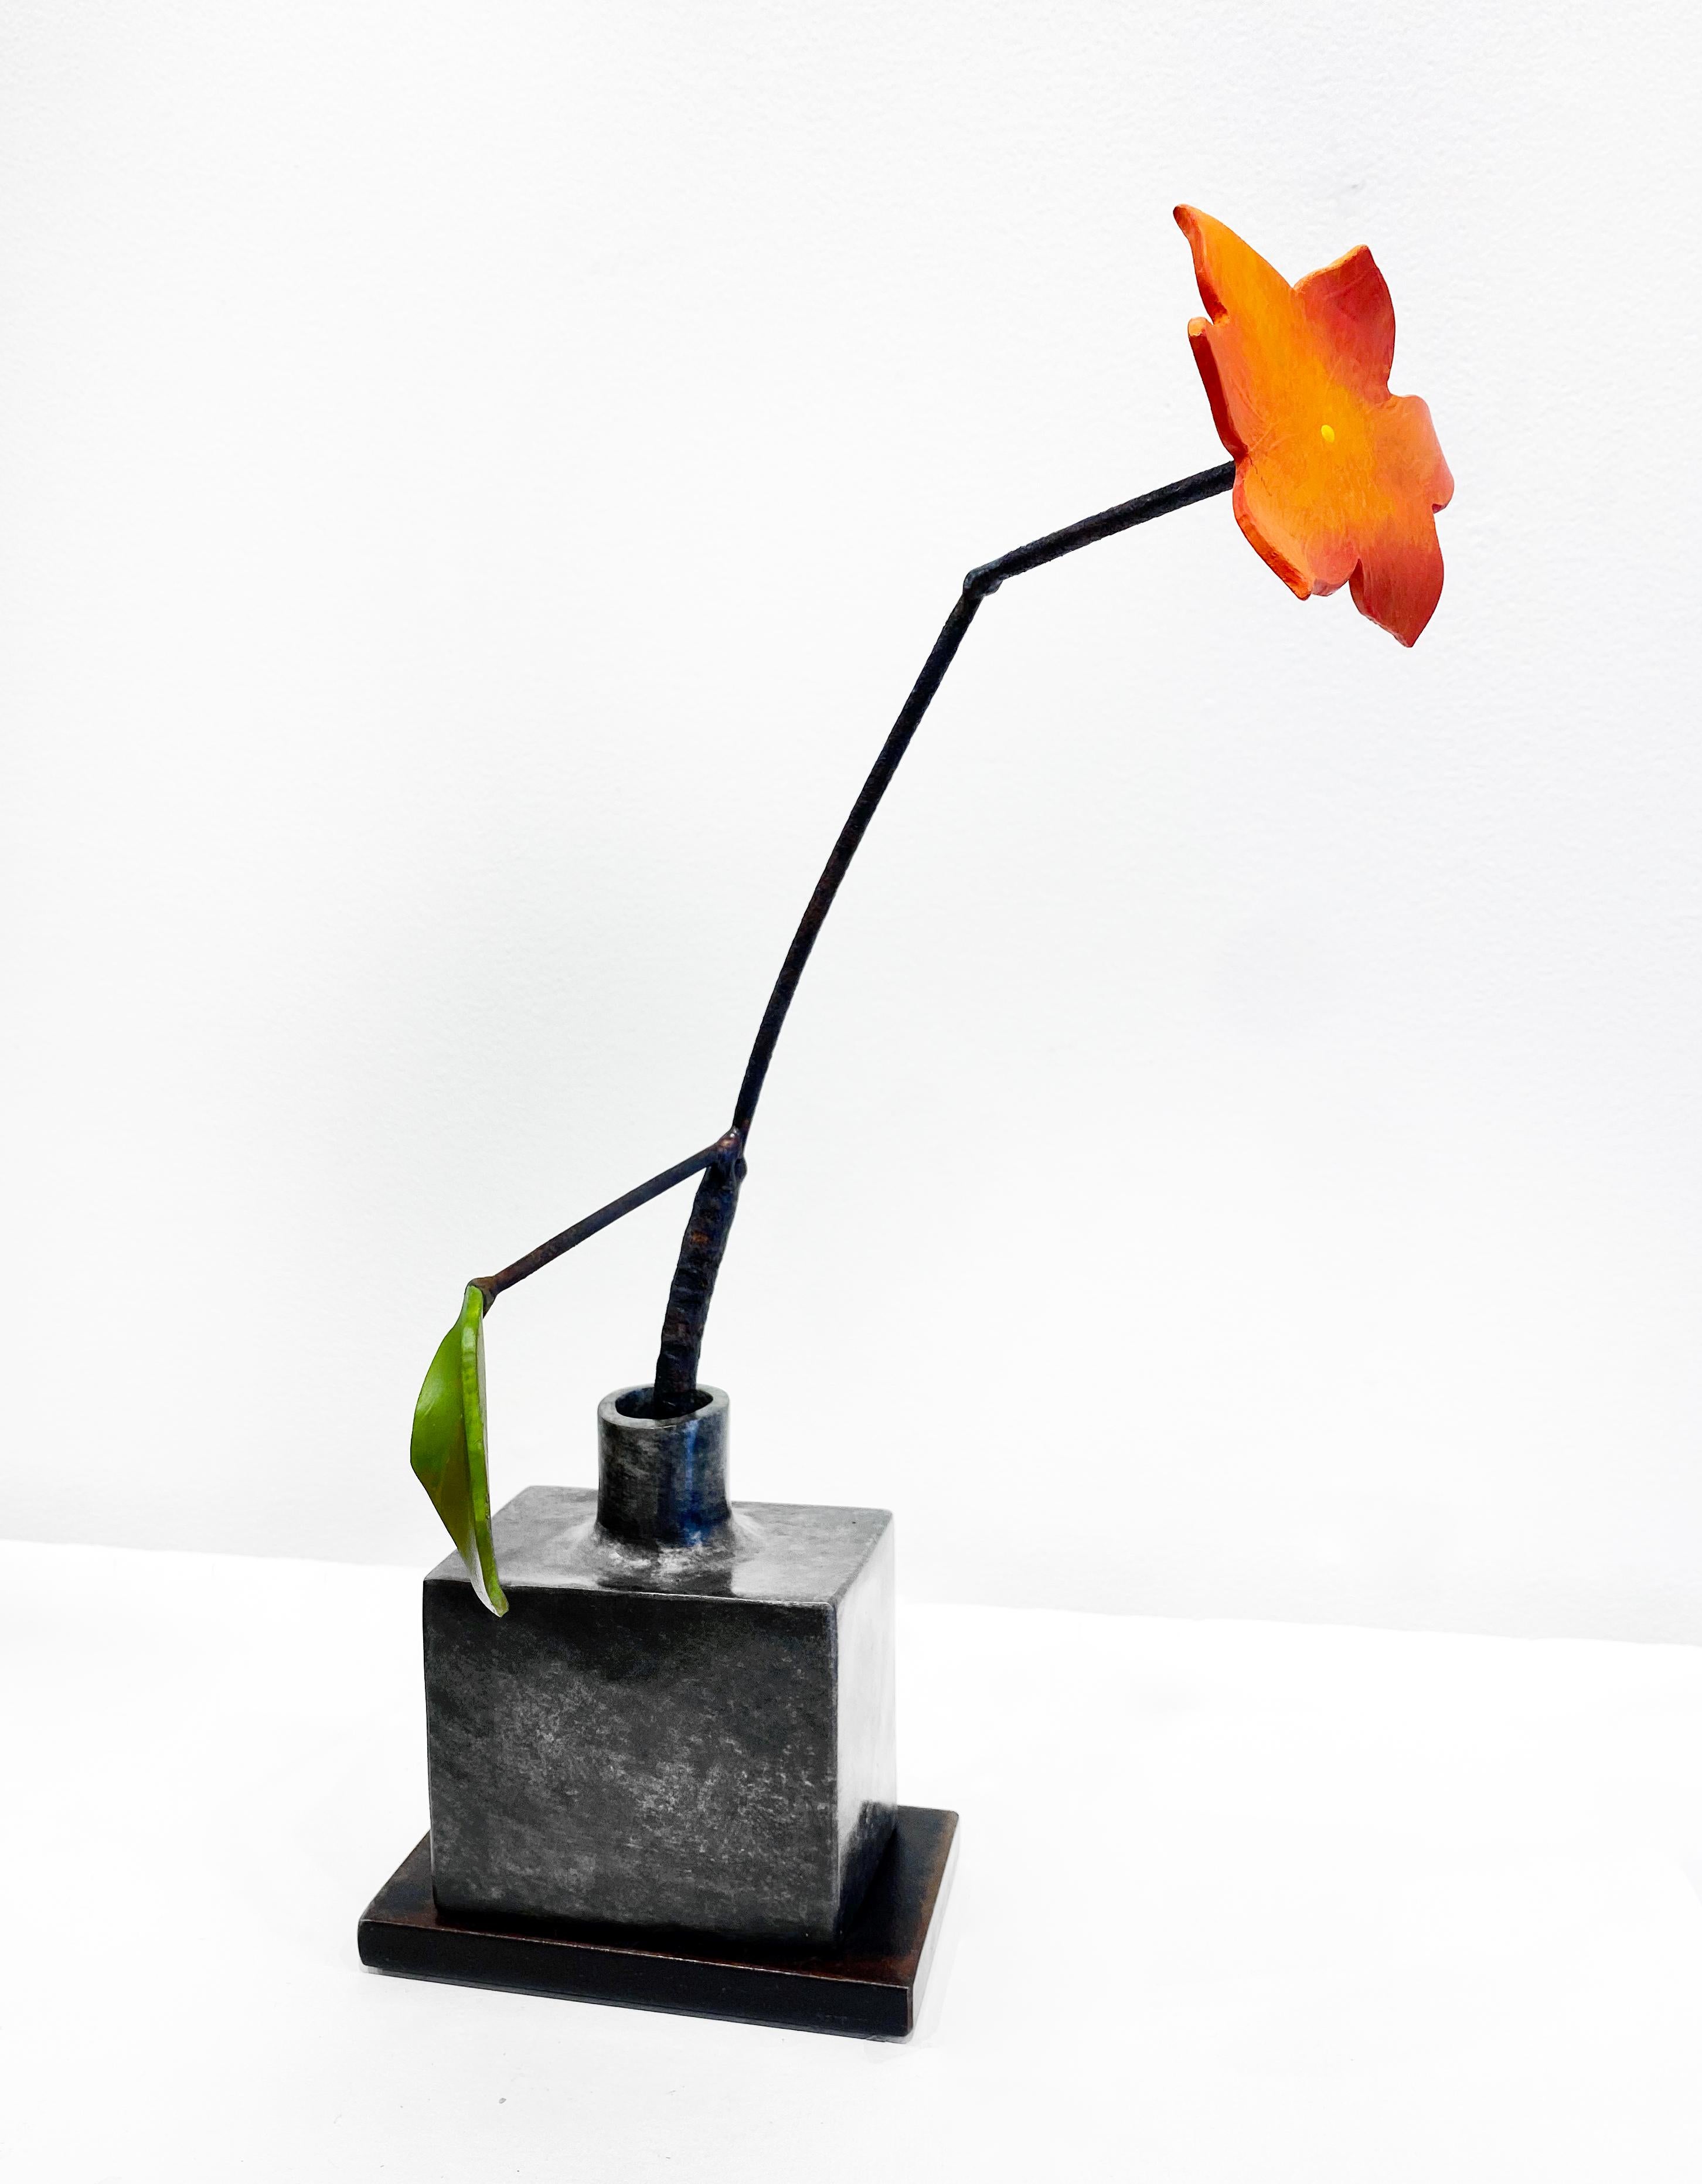 Sculpture en bronze et acier de David Kimball Anderson « Fleur orange bouteille de argent » (feuille de bouteille en argent)